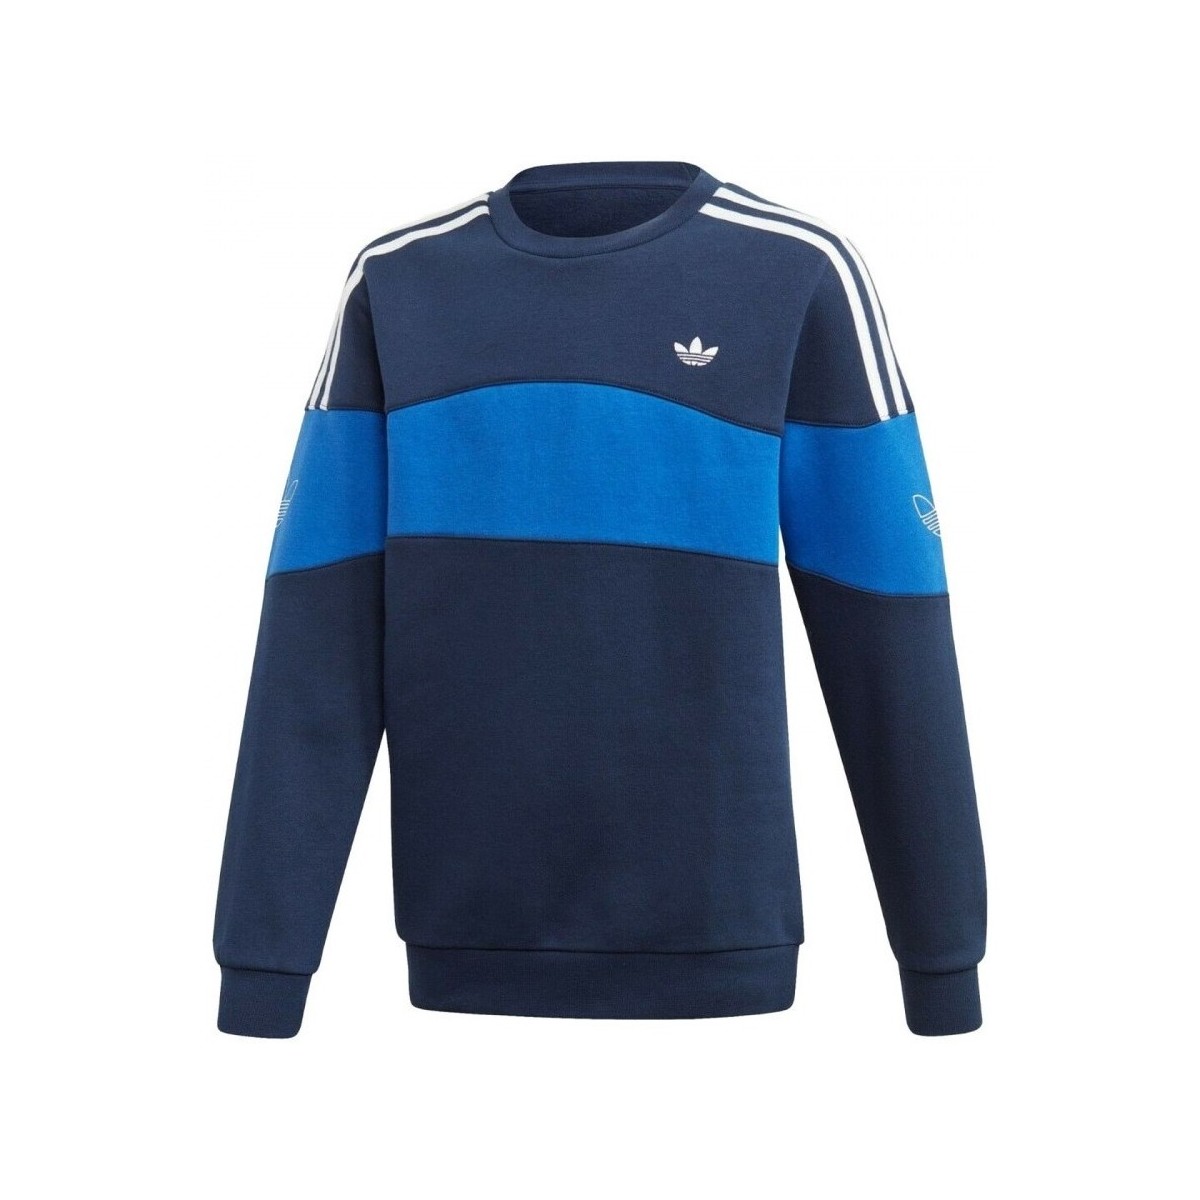 Textiel Kinderen Sweaters / Sweatshirts adidas Originals Bandrix Crew Blauw